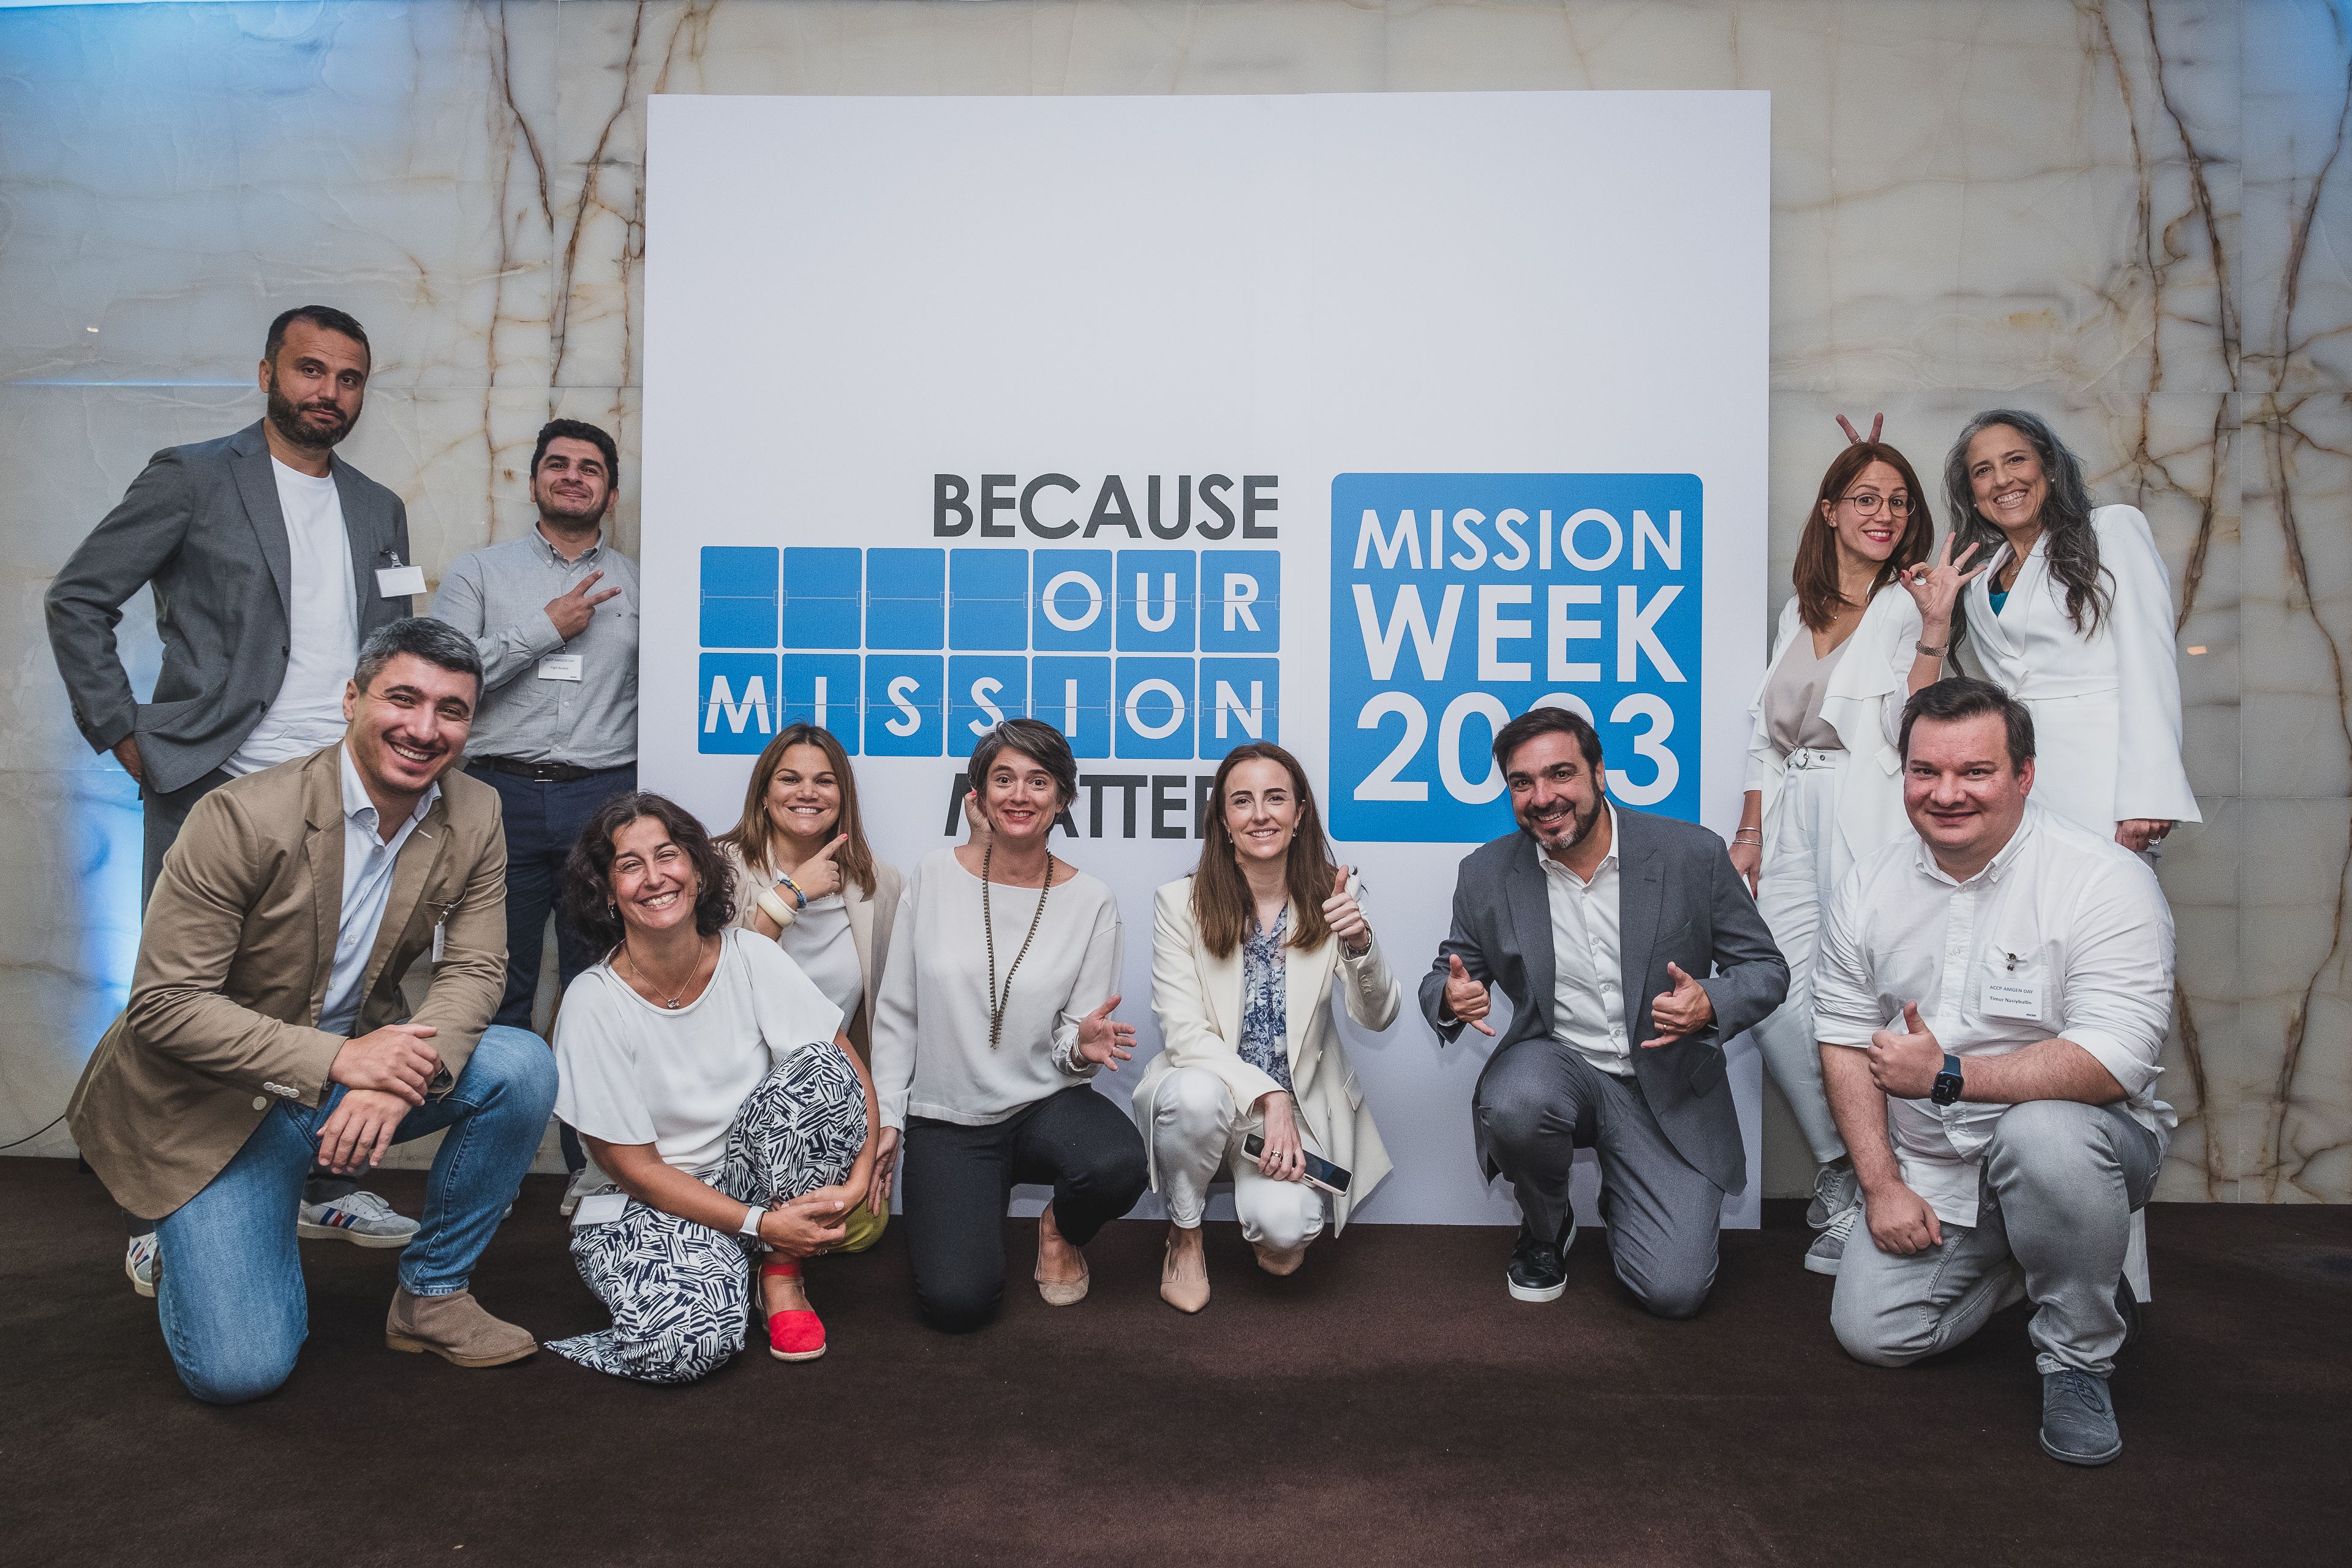 A Equipa de Direção a celebrar a Mission Week da AMGEN